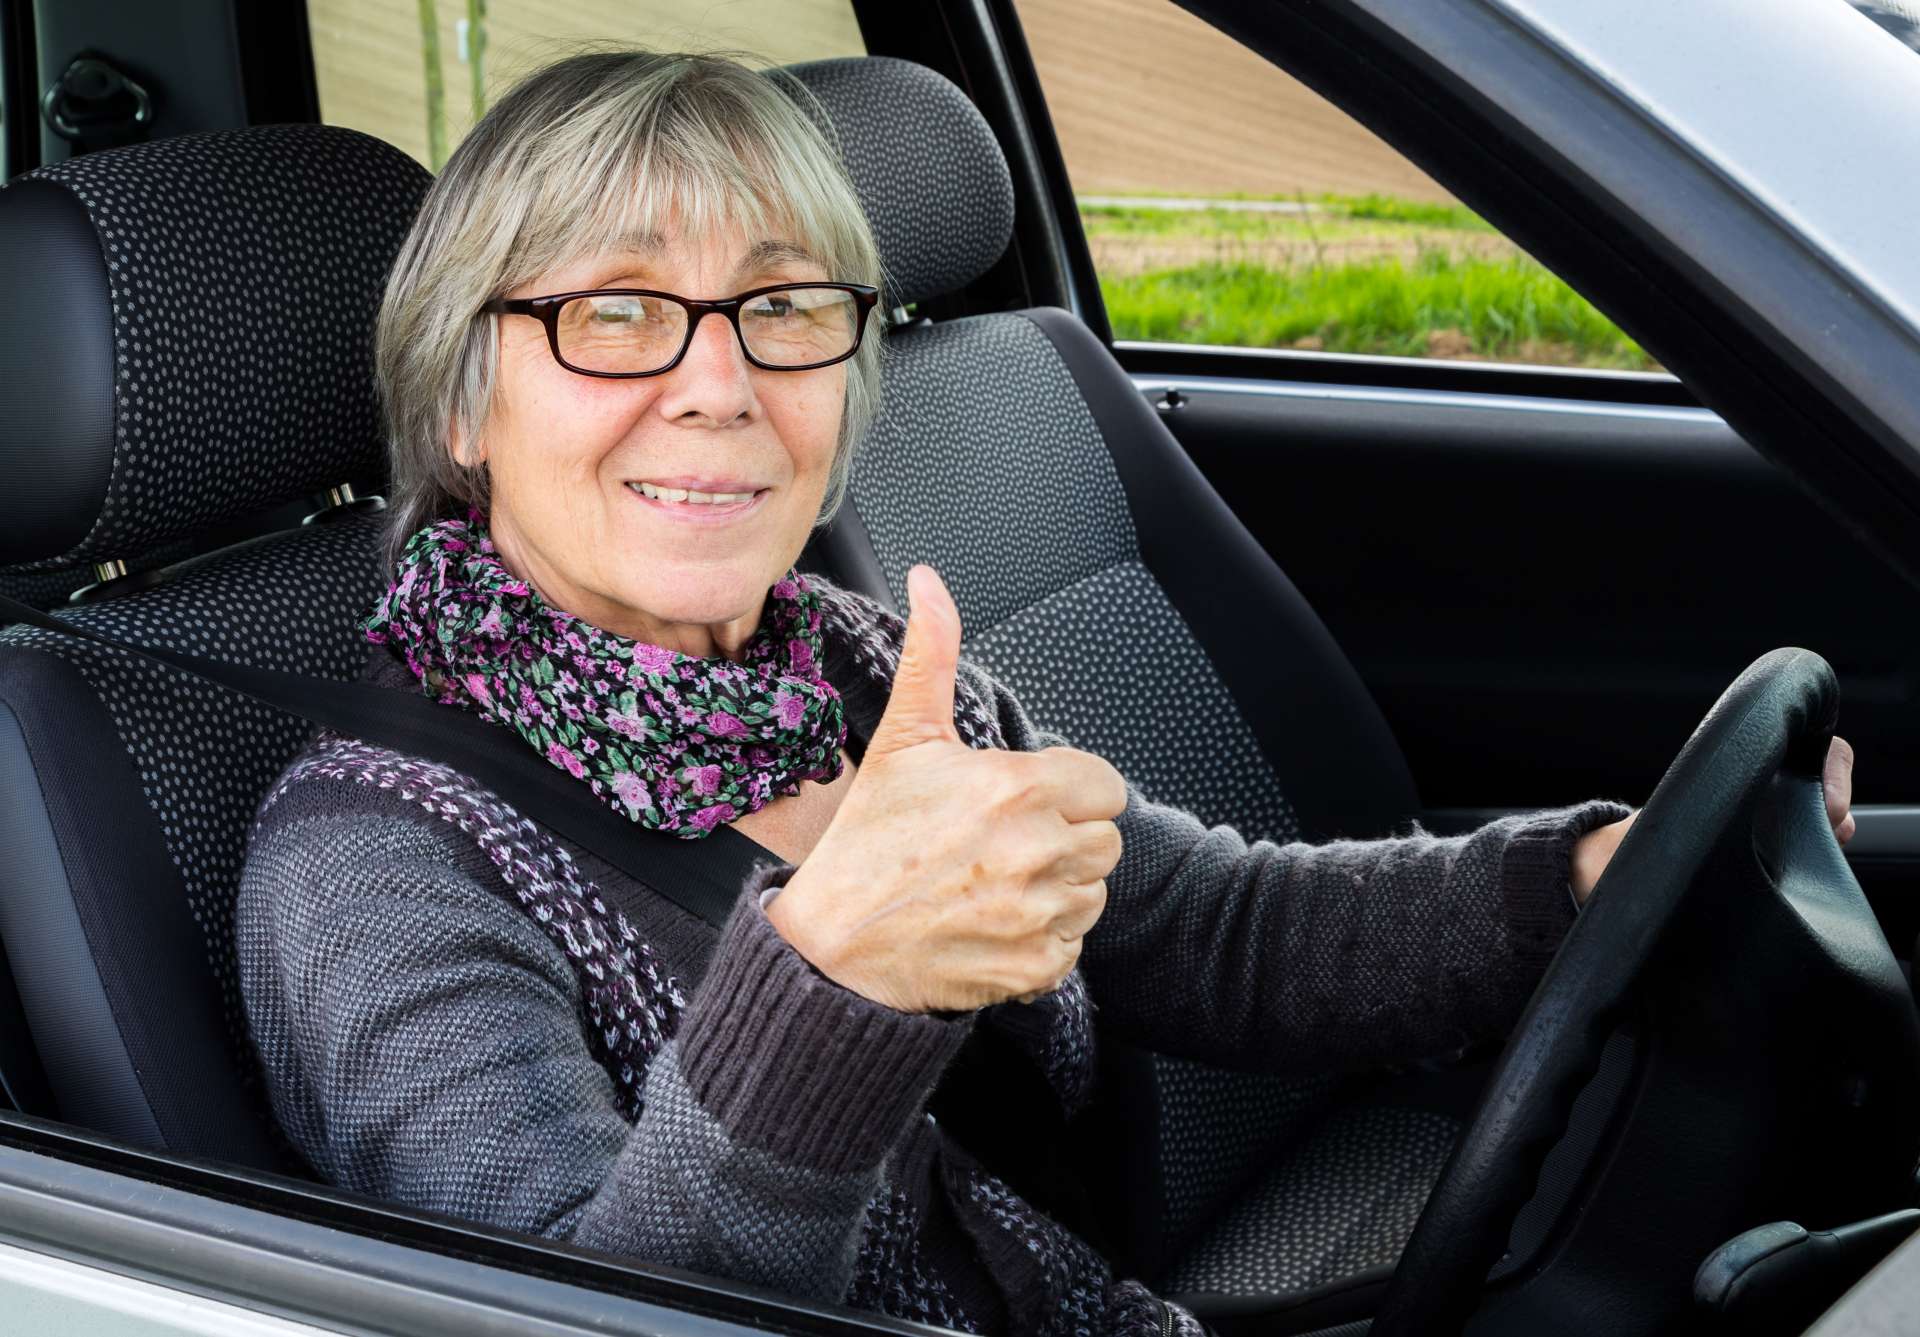 Senior Driver Assessment + Refresher Drive = $150